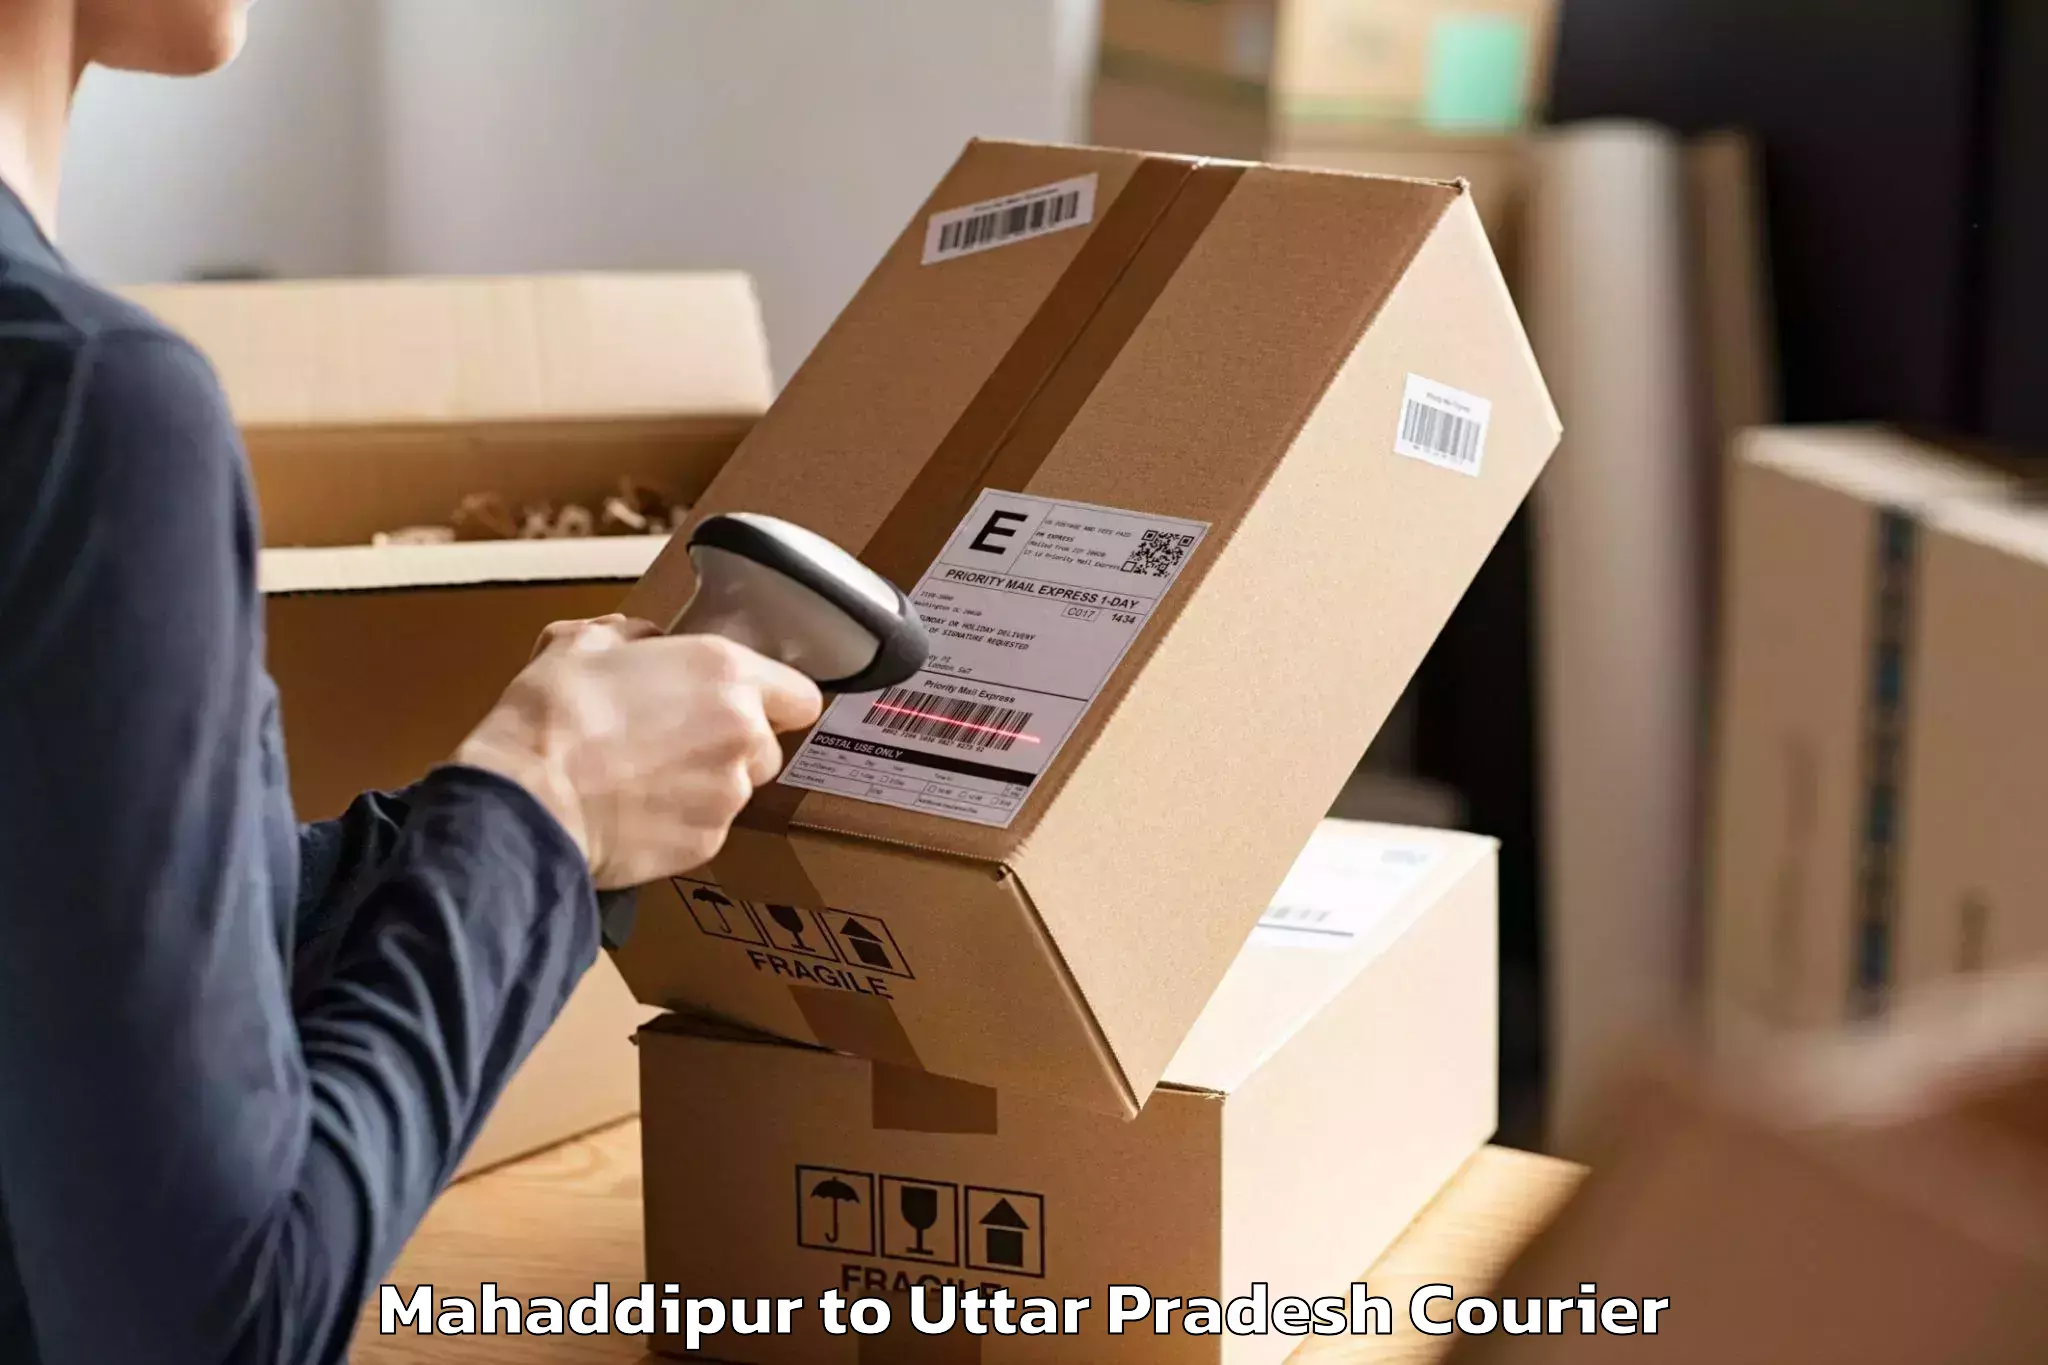 Expert furniture movers Mahaddipur to Aligarh Muslim University